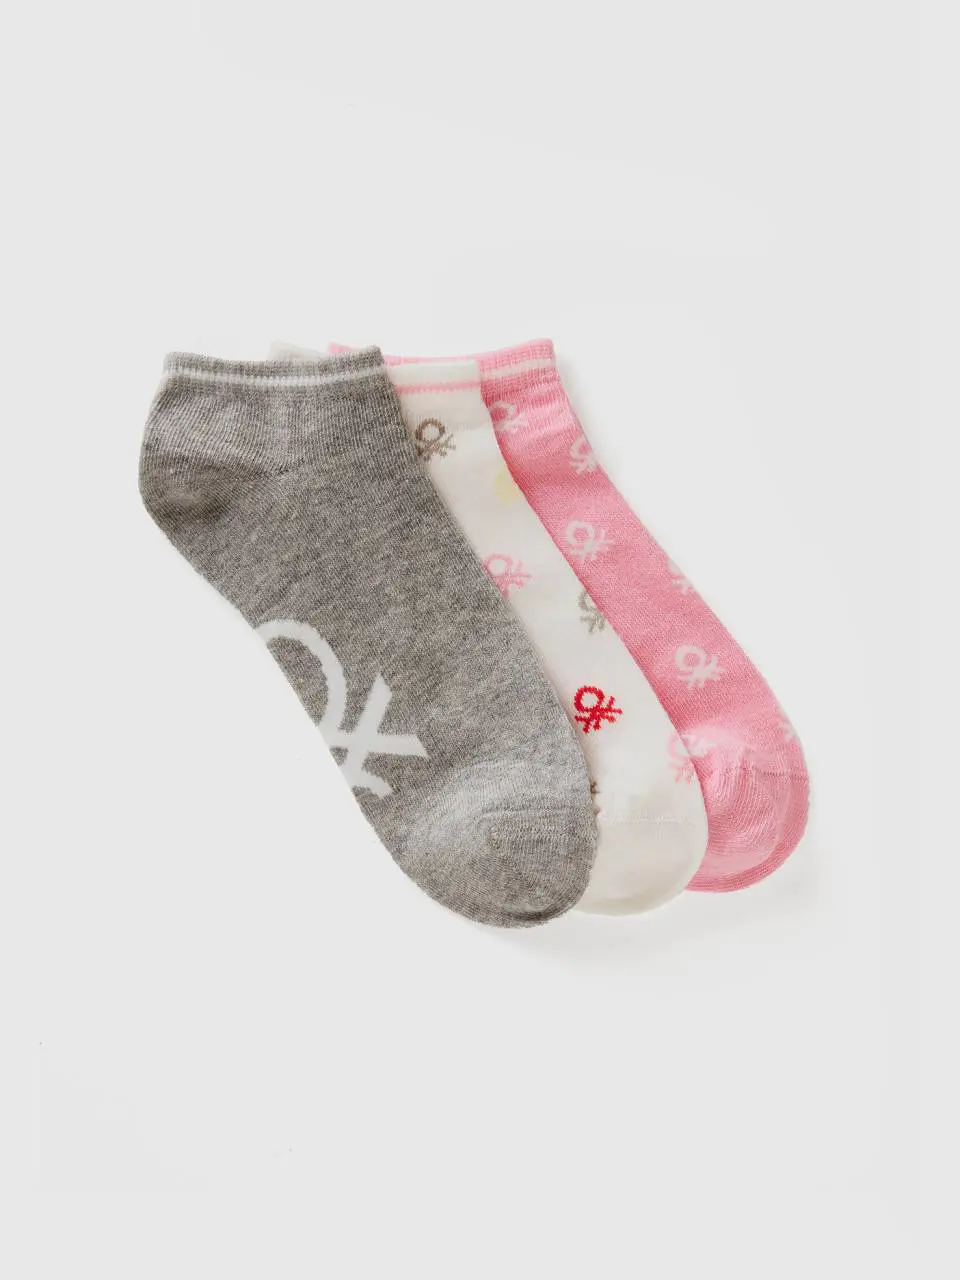 Benetton gray, pink and white short socks. 1